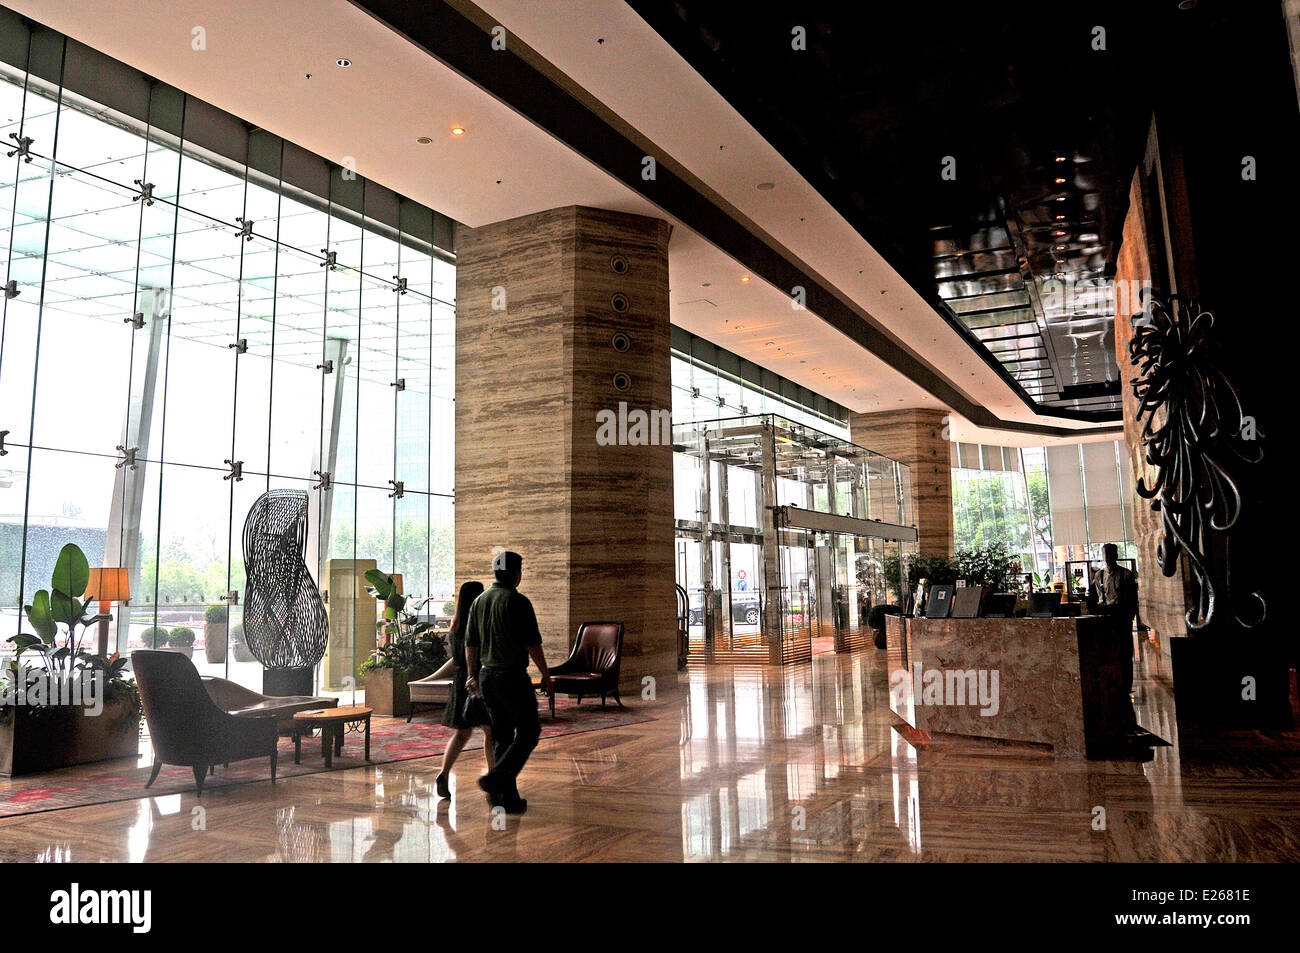 Hall de l'Hôtel Ritz Carlton Palace Hotel Pudong Shanghai Chine Banque D'Images